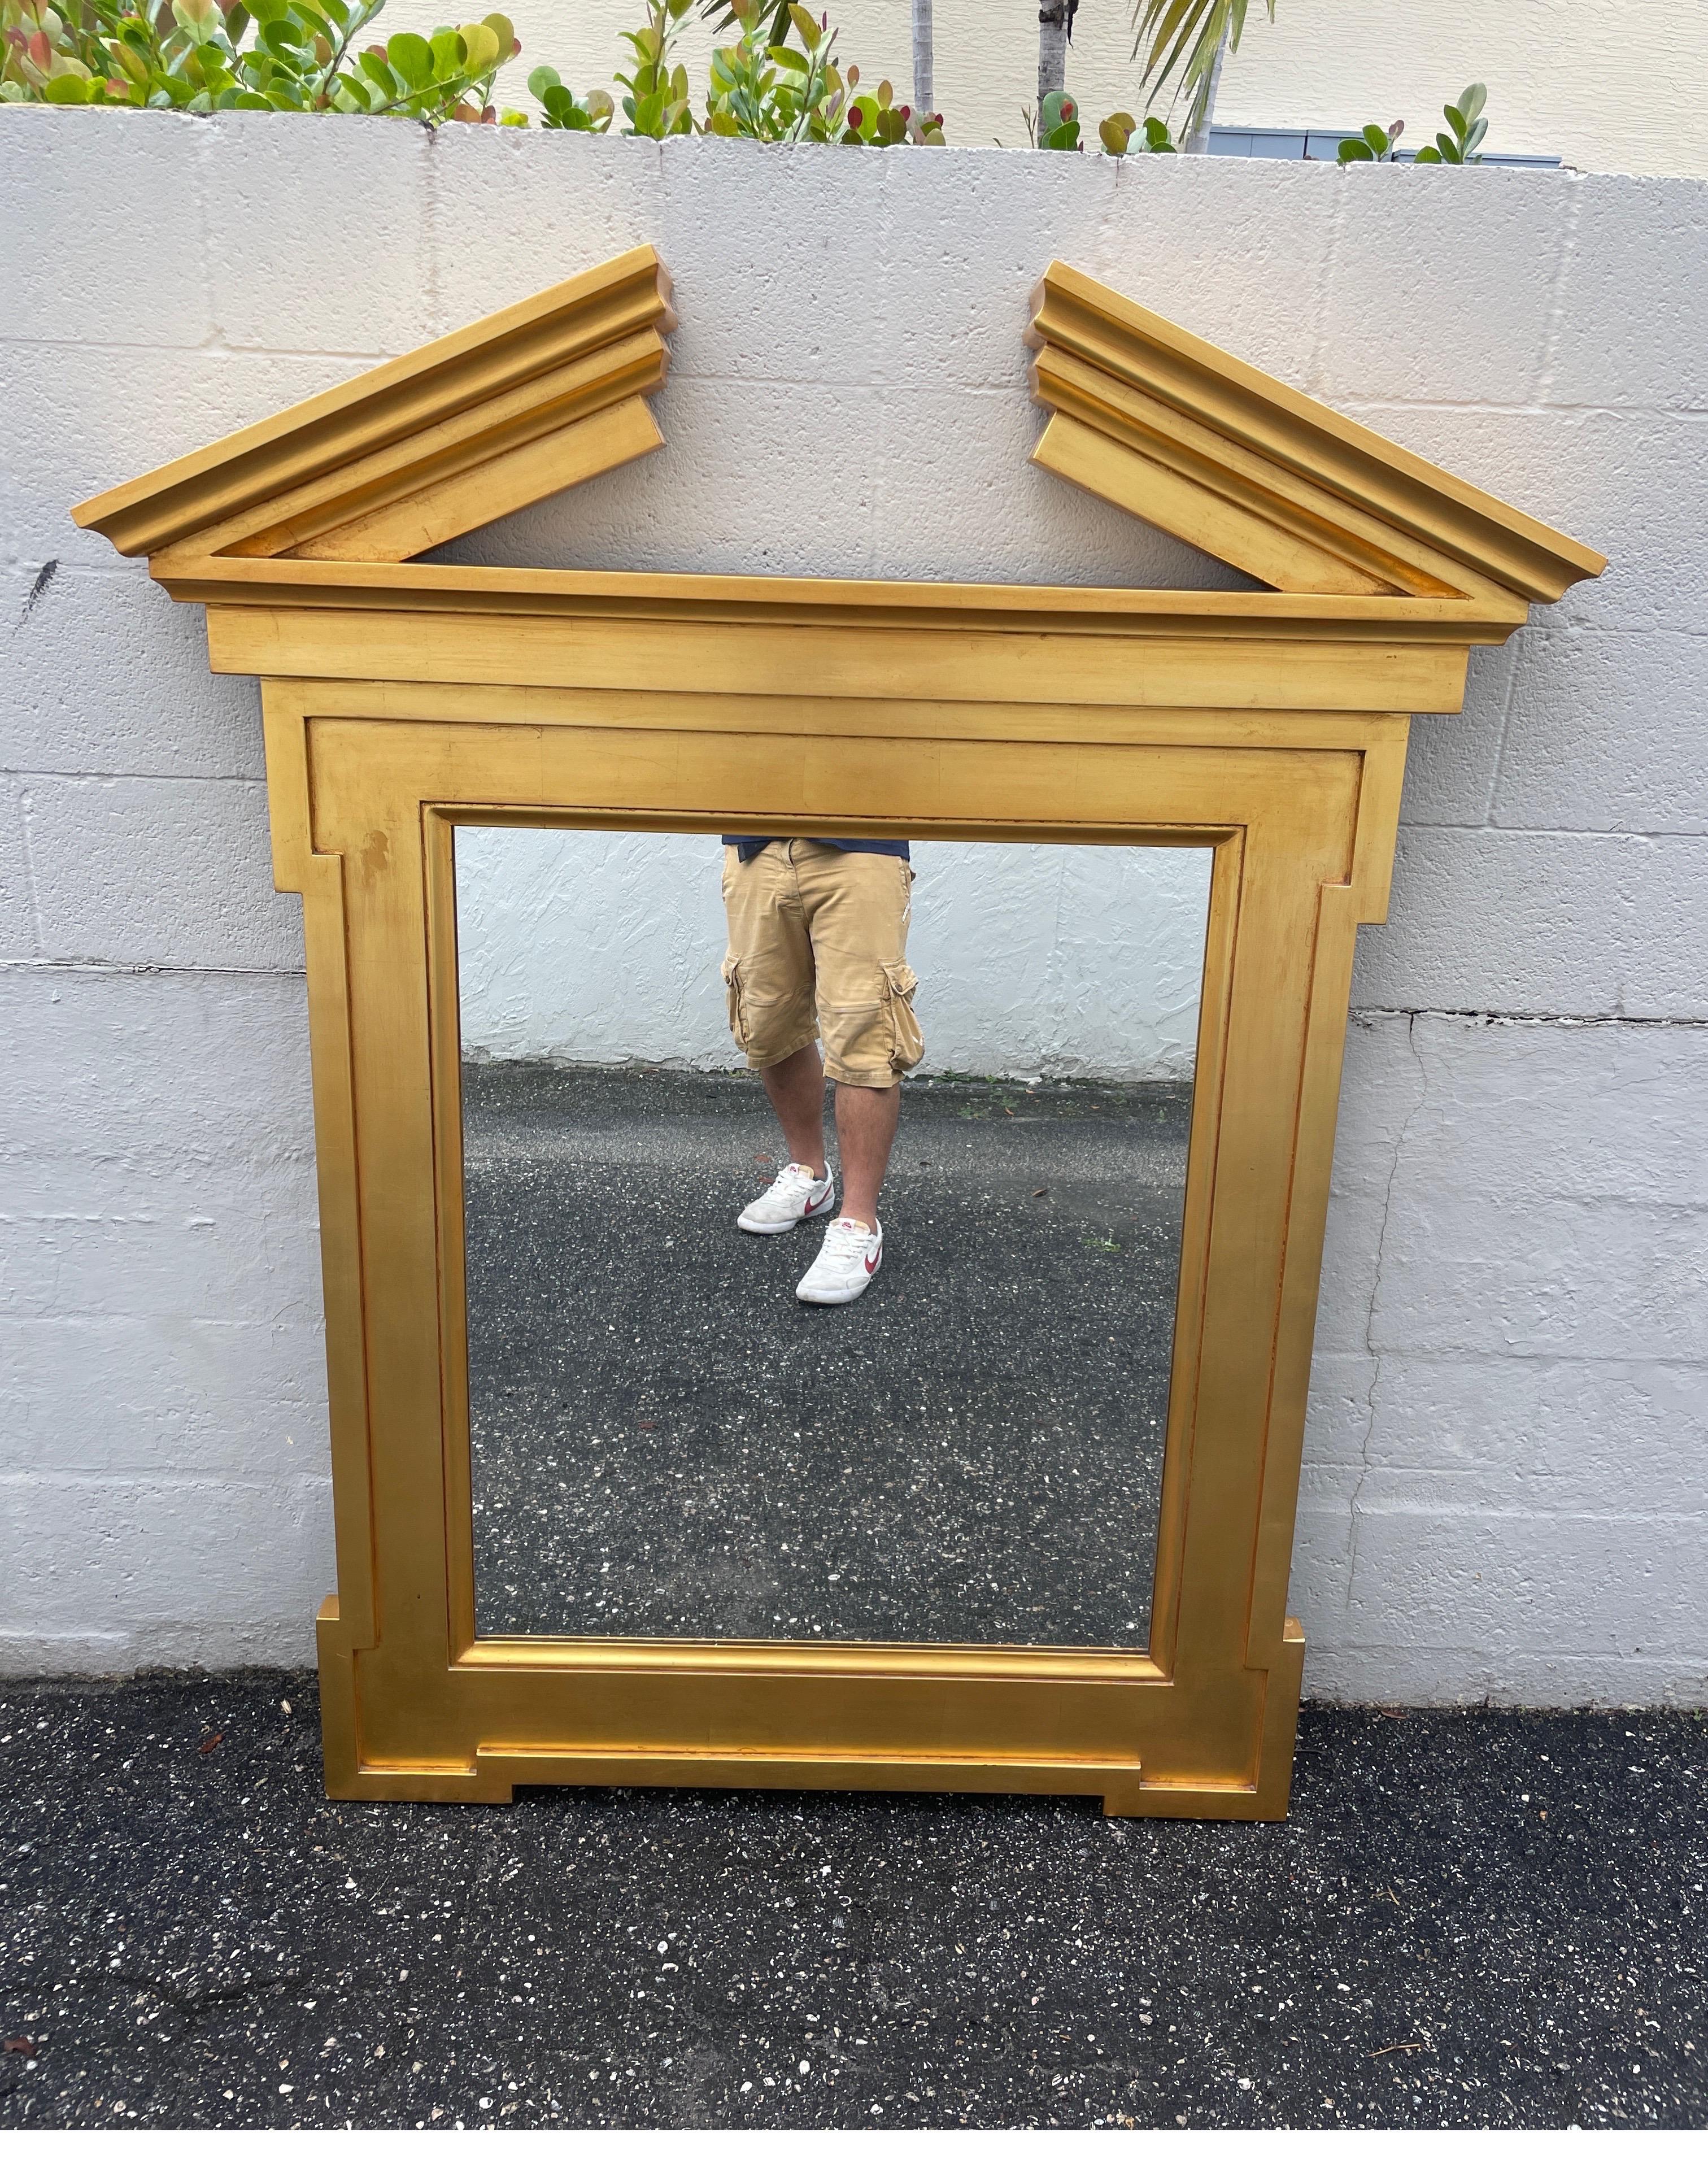 Vergoldeter Spiegel mit gebrochenem Giebel im neoklassischen Stil von John Hutton für Donghia.
Dieses ikonische Stück verleiht jedem Ambiente Glanz.